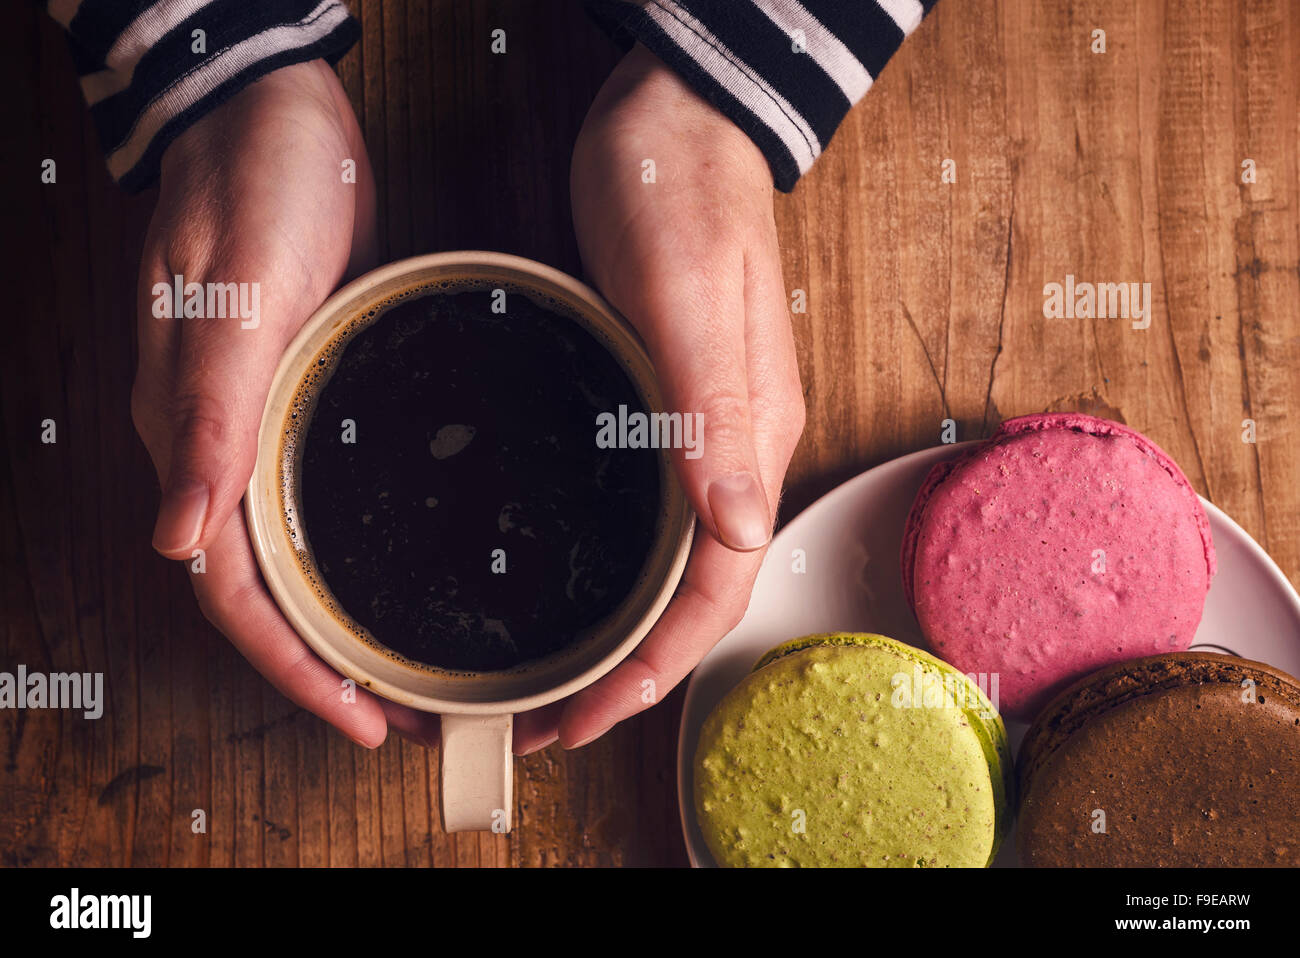 Café et biscuits macaron sur la table , femme hand holding cup avec boisson chaude, vue d'en haut, aux couleurs rétro Banque D'Images